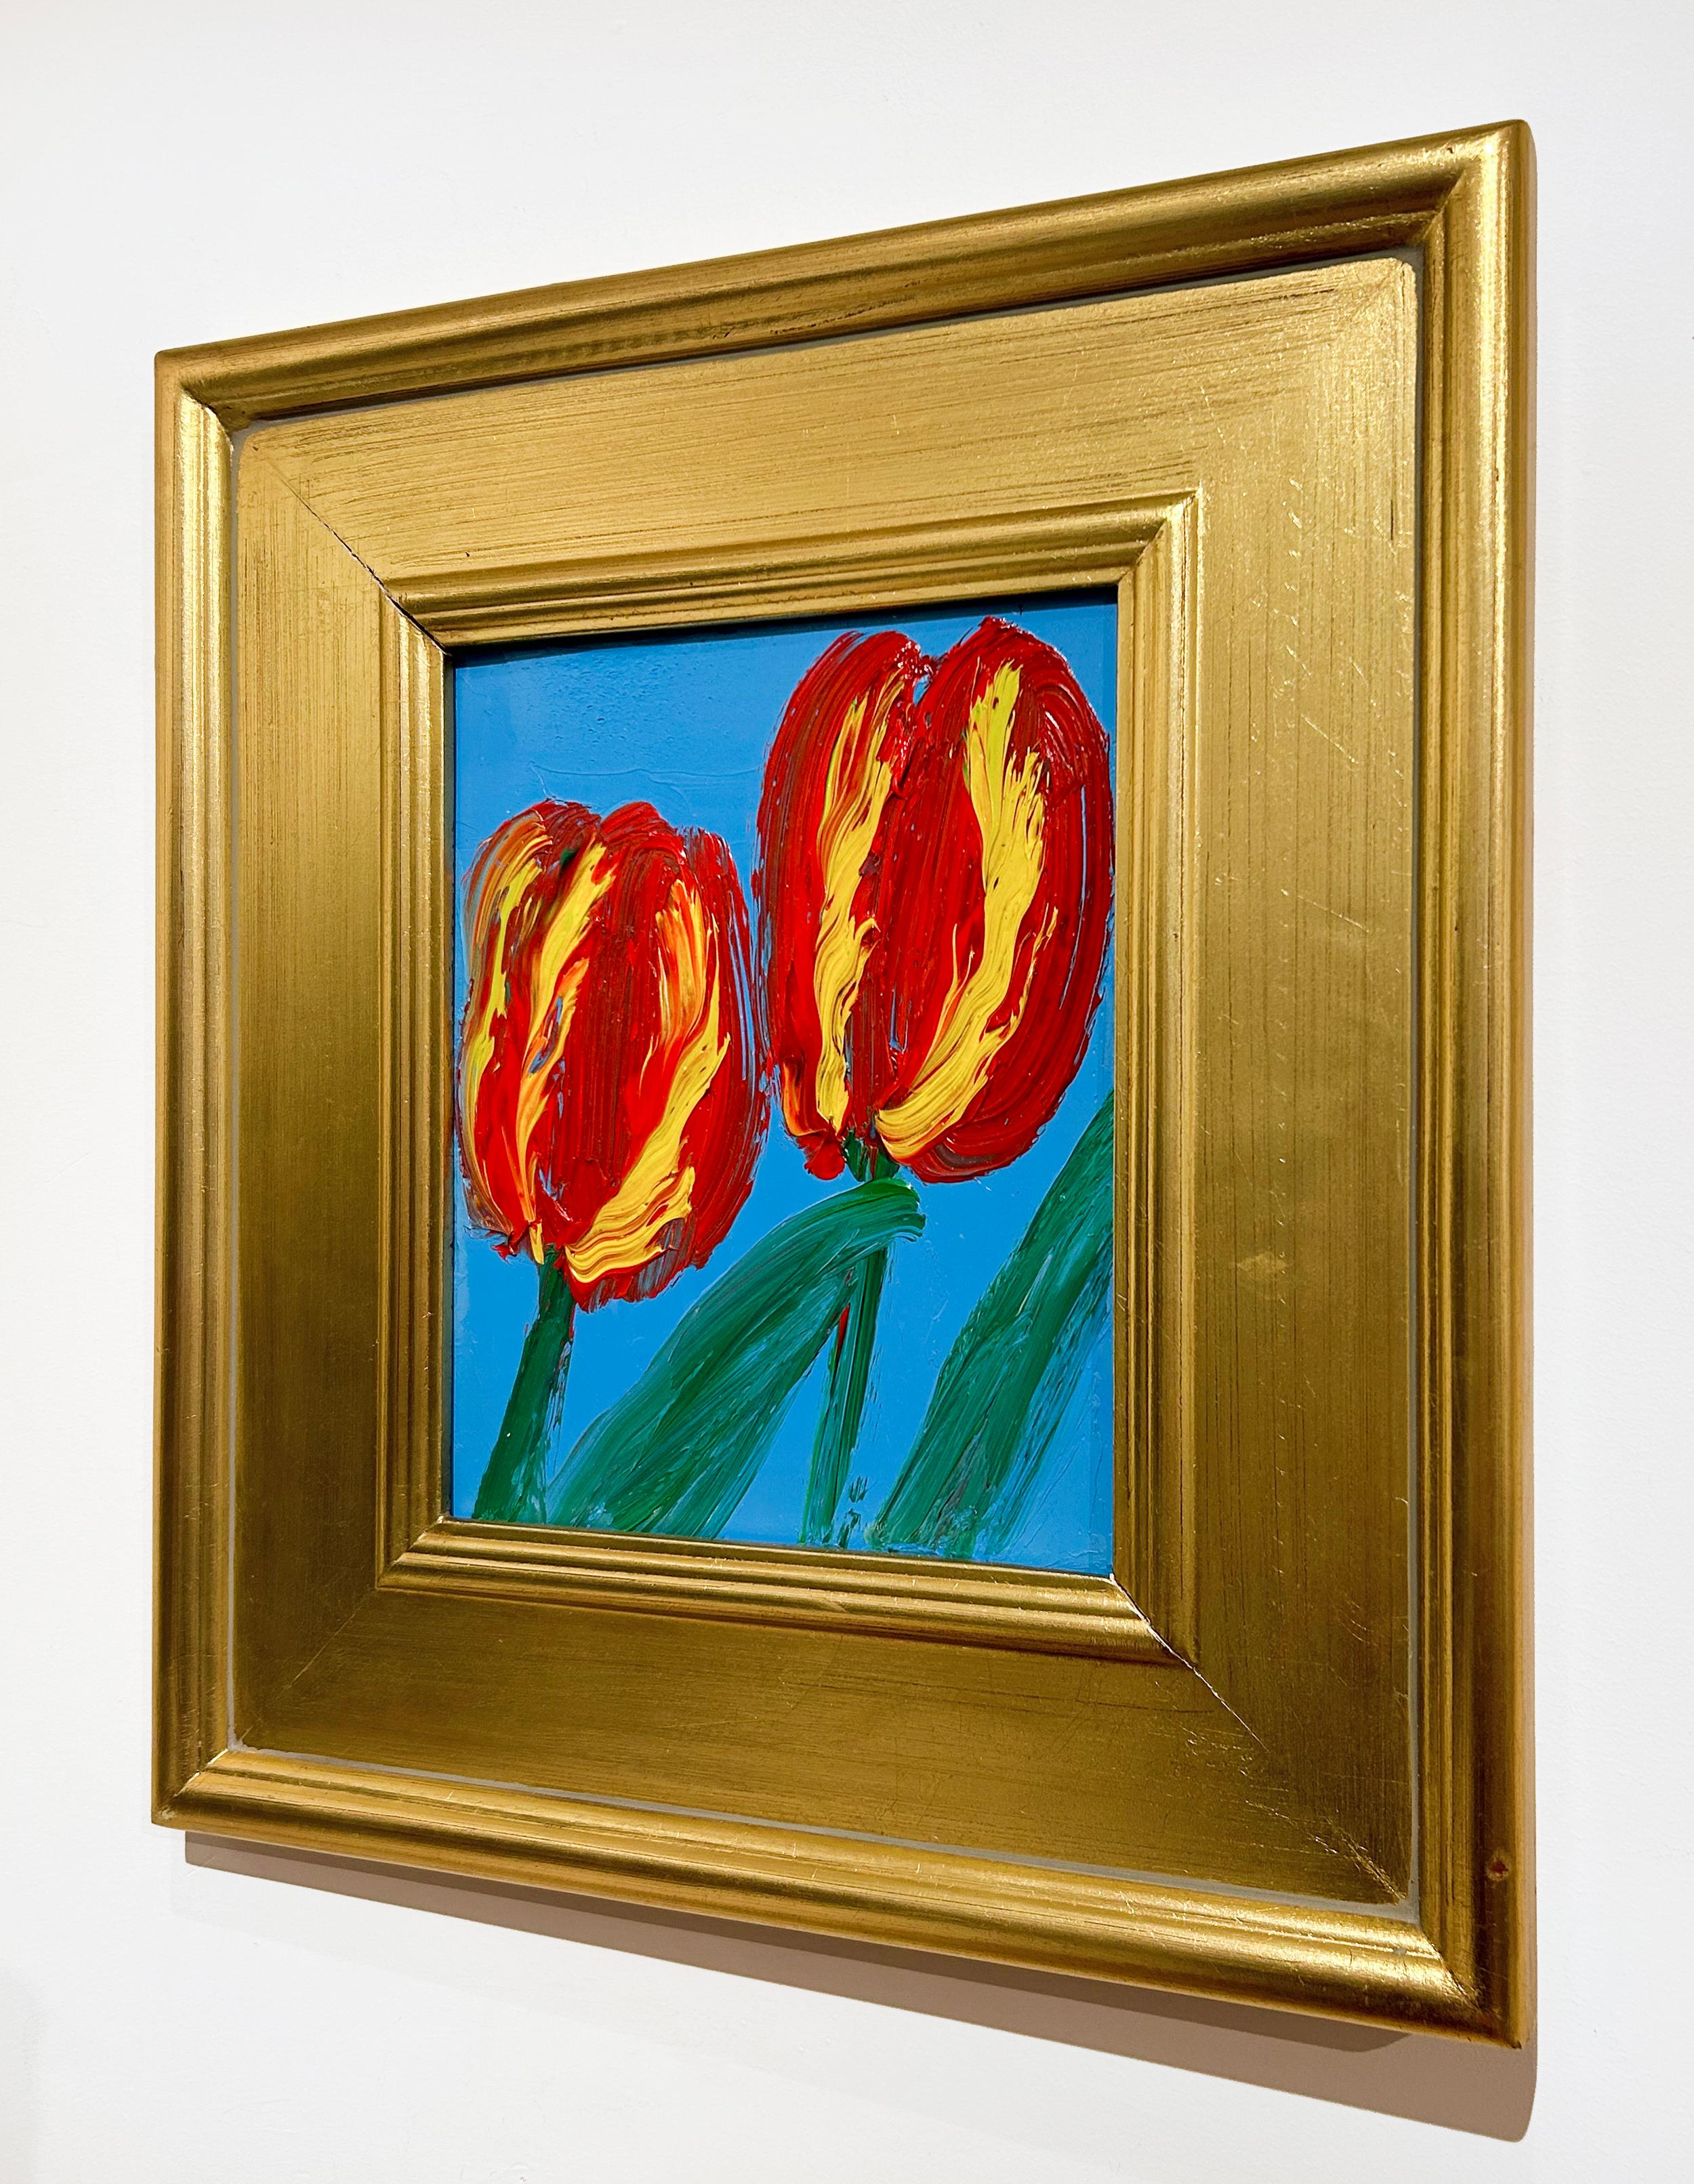 Künstler:  Slonem, Hunt
Titel:  2 Tulpen Belle Terre
Serie:  Blumen
Datum:  2023
Medium:  Öl auf Holz
Ungerahmt Abmessungen:  10